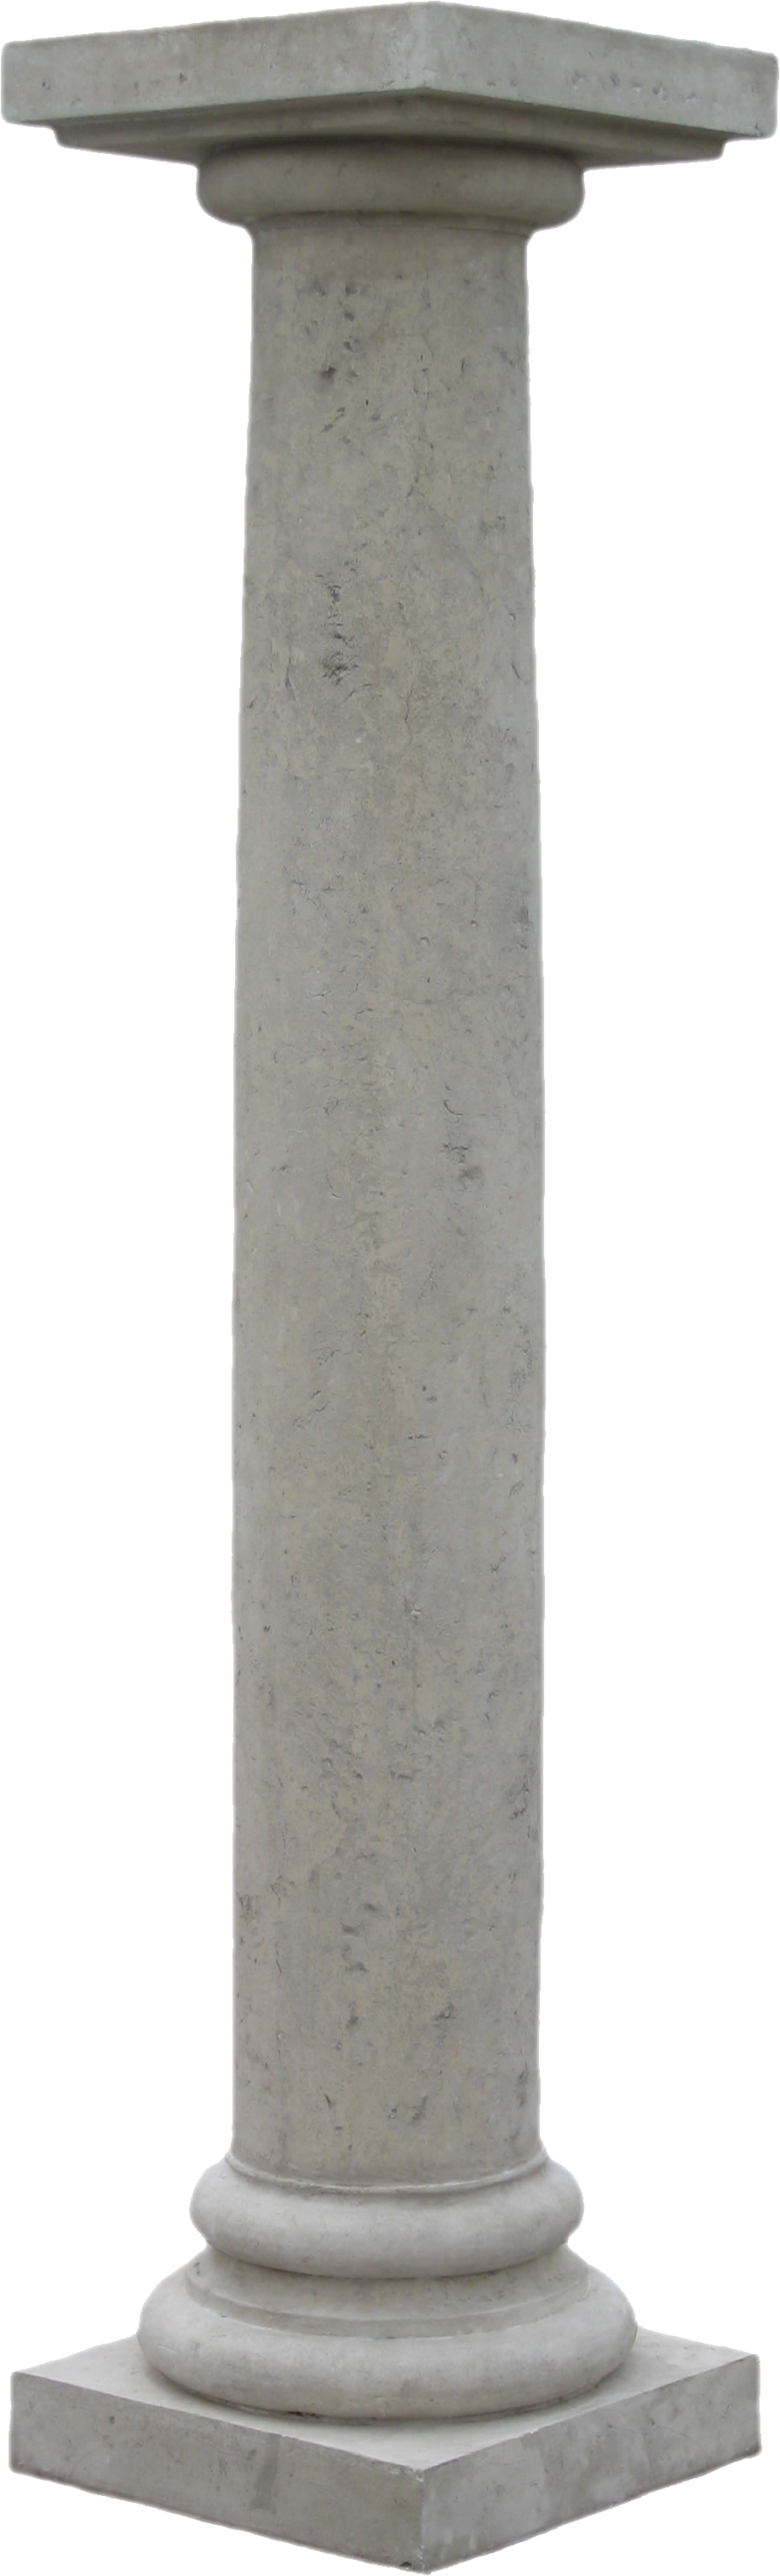 Immagine Trasparente del pilastro della costruzione antica